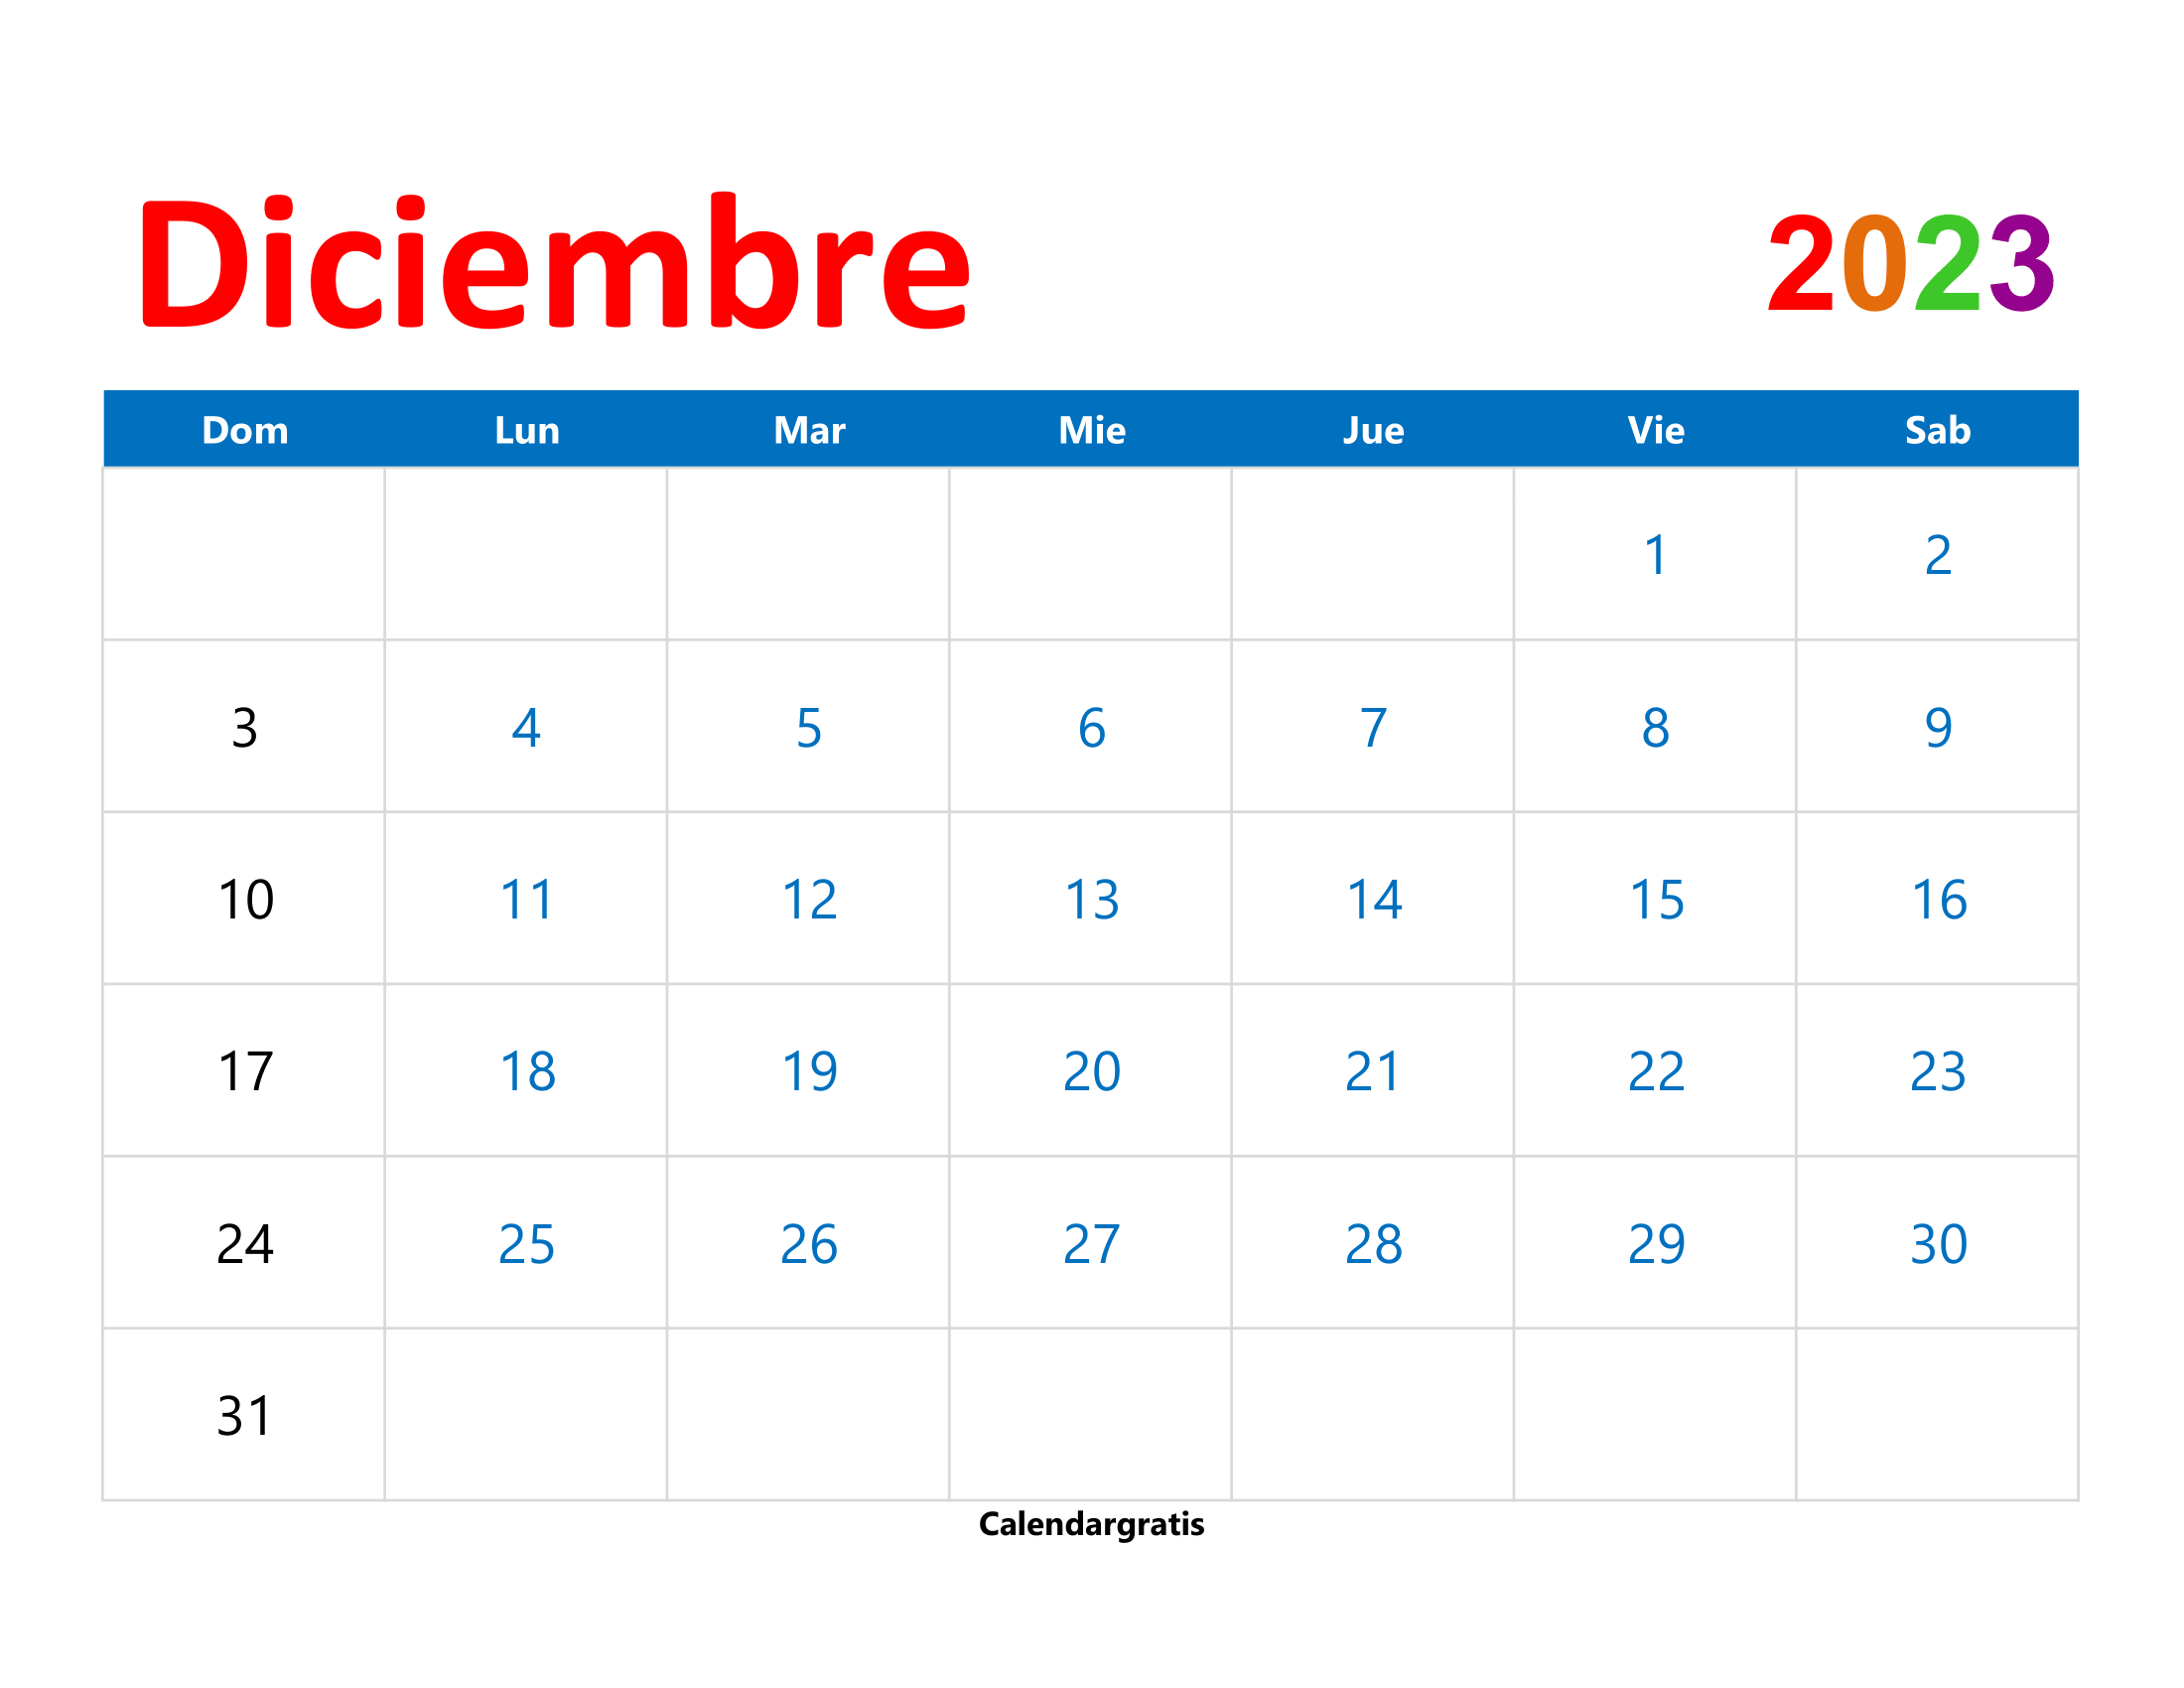 Calendario mensual de diciembre 2023 listo para imprimir